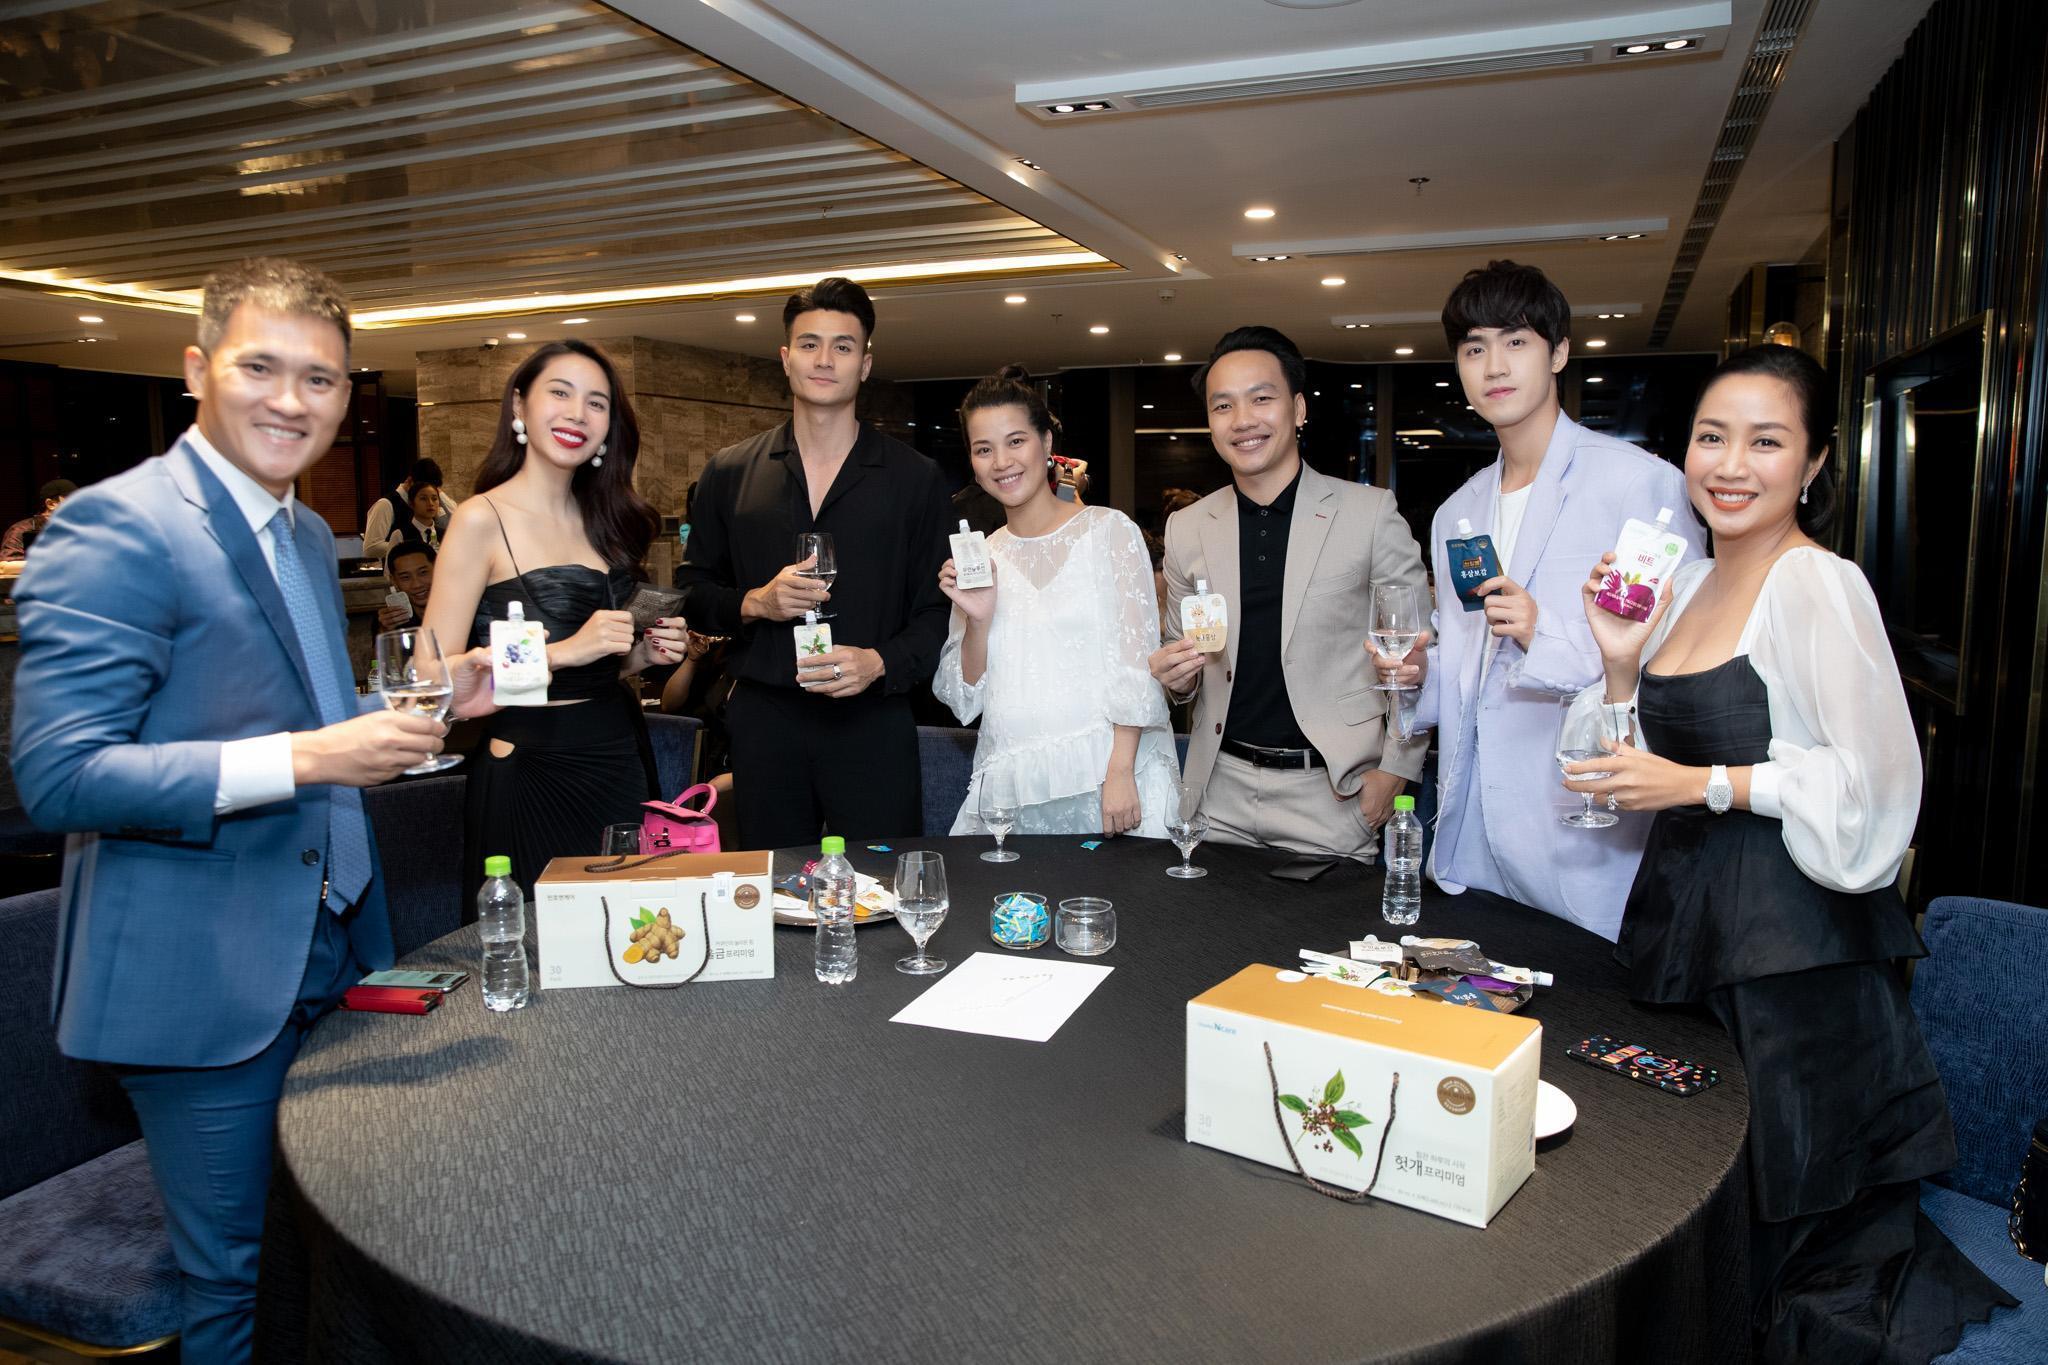 Thủy Tiên, Công Vinh xuất hiện nổi bật trong buổi ra mắt thương hiệu nước uống hồng sâm Chunho - Ảnh 5.